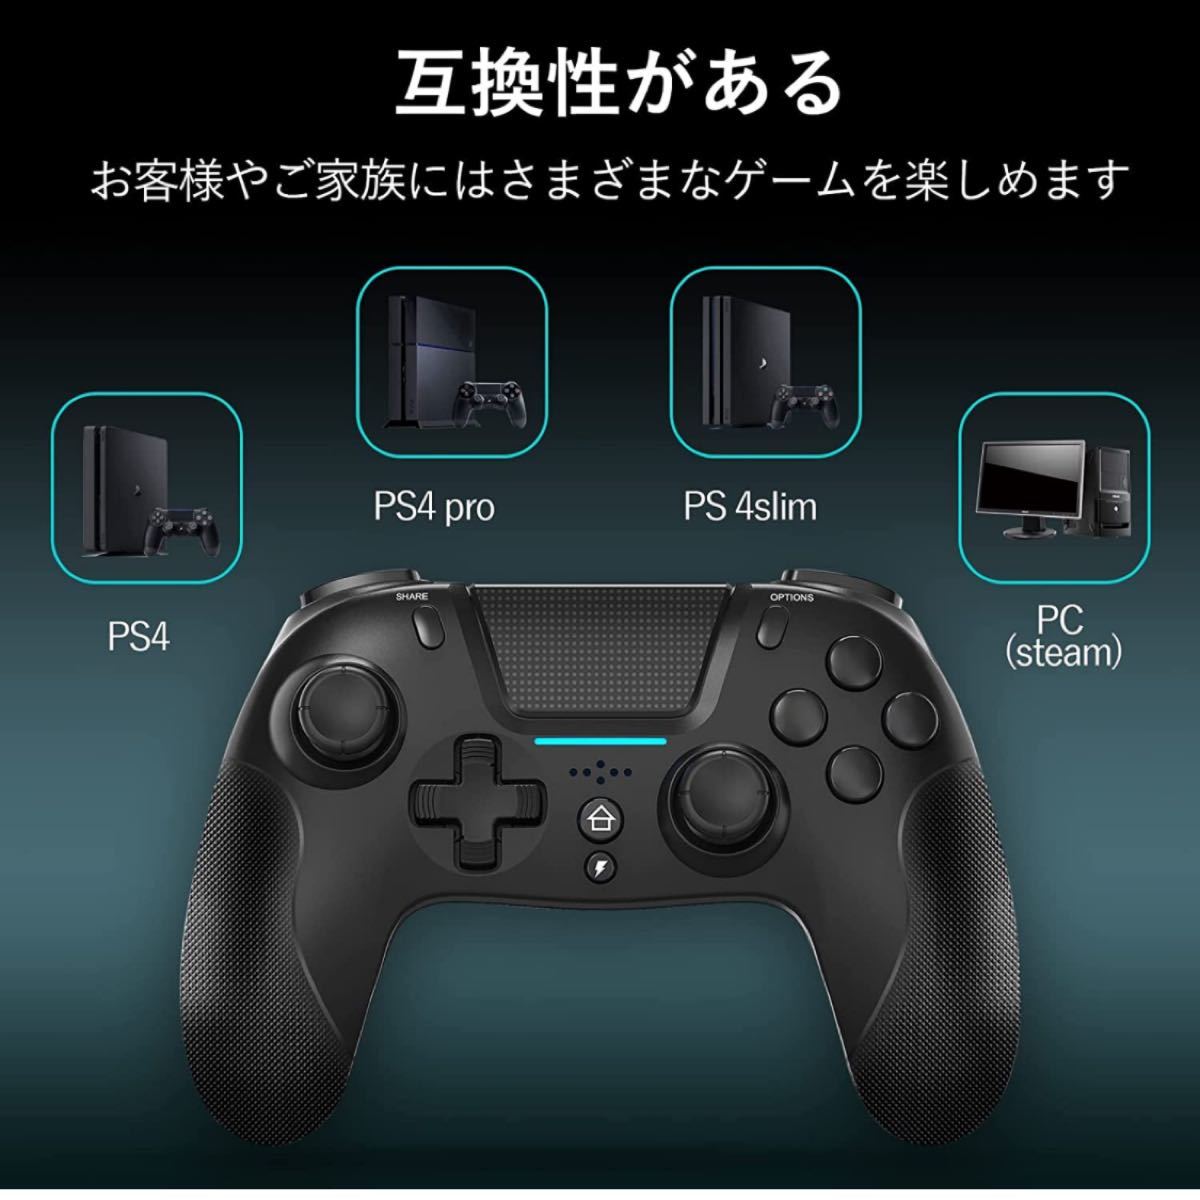 PS4コントローラー 、最新バージョンの650mAhバッテリー、PS4 / Pro / Slim / PCと互換性があります